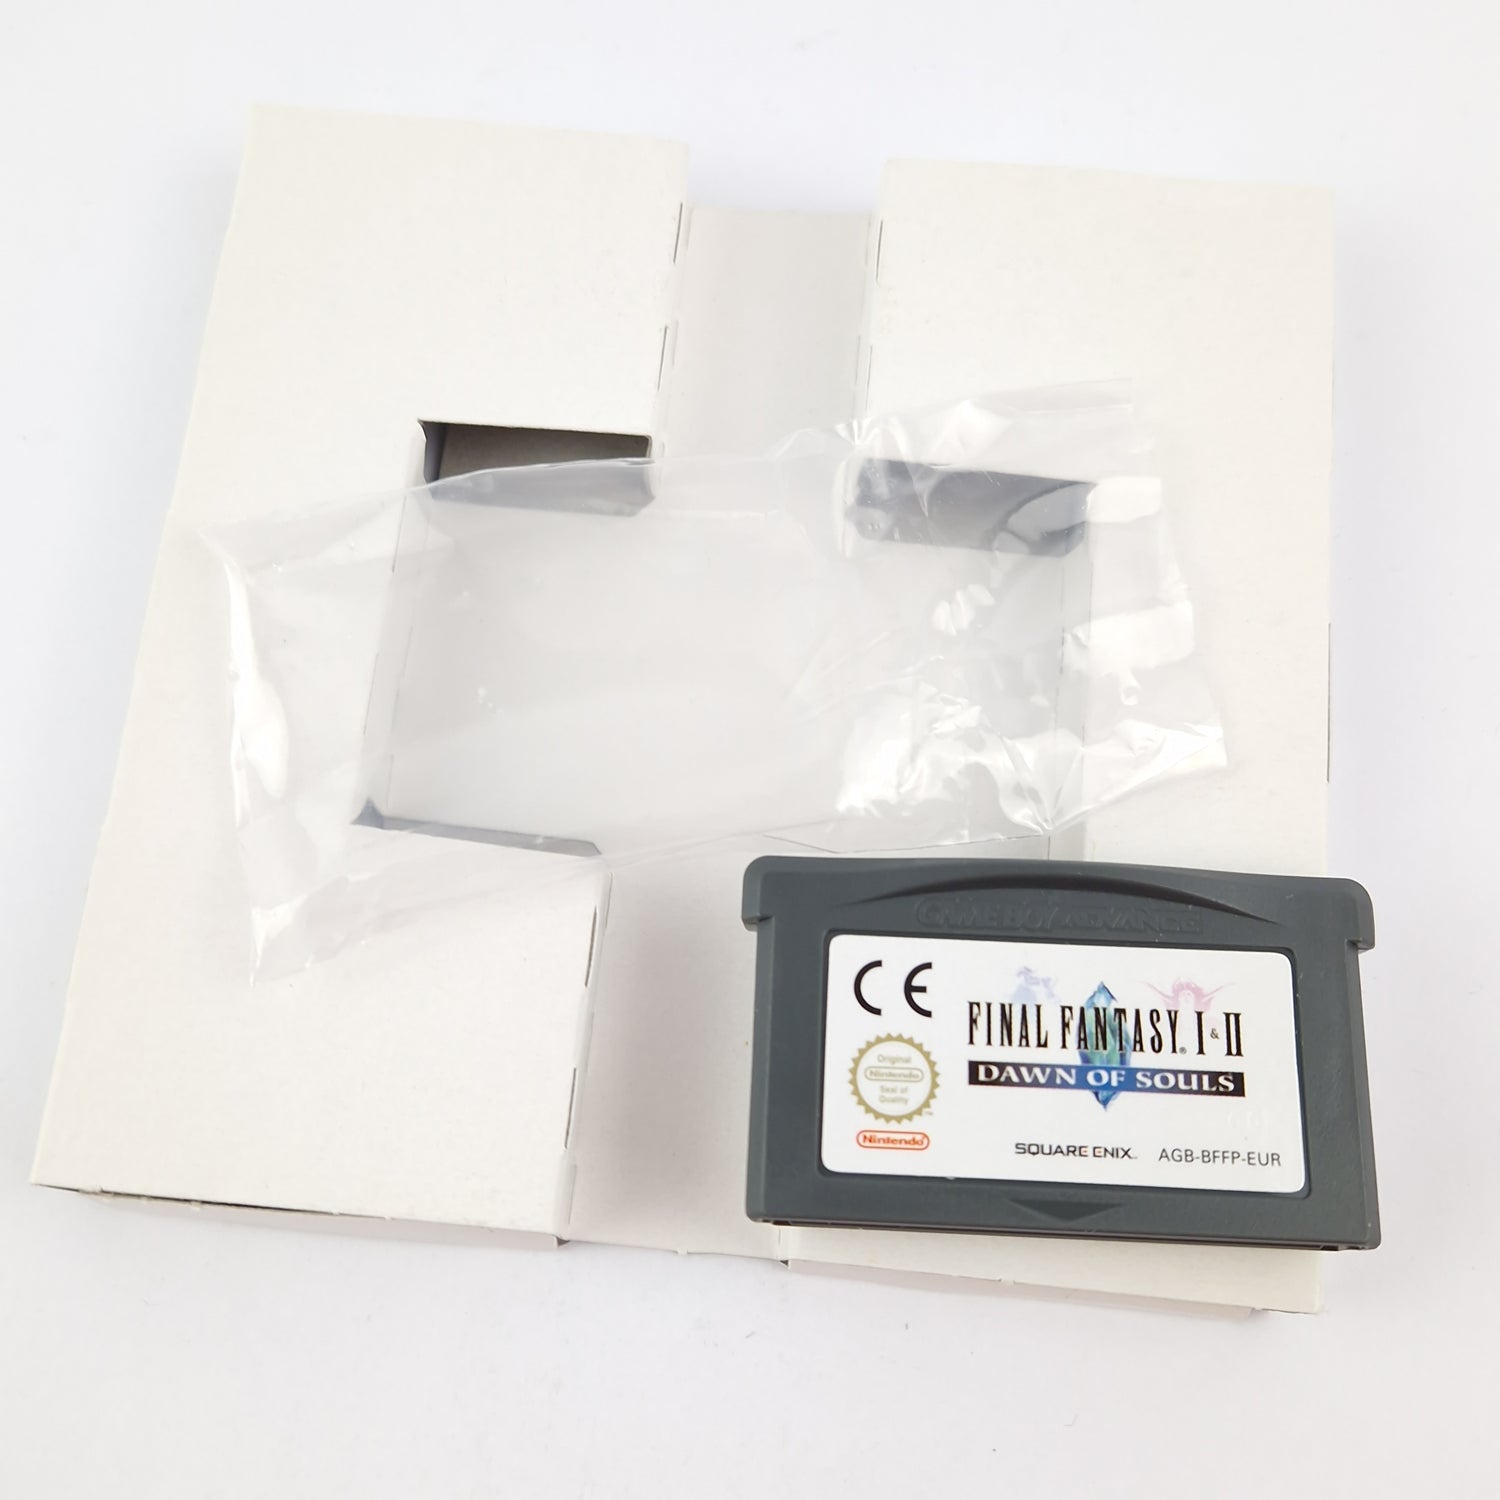 Nintendo Game Boy Advance Game: Final Fantasy I & II Dawn of Souls - OVP GBA